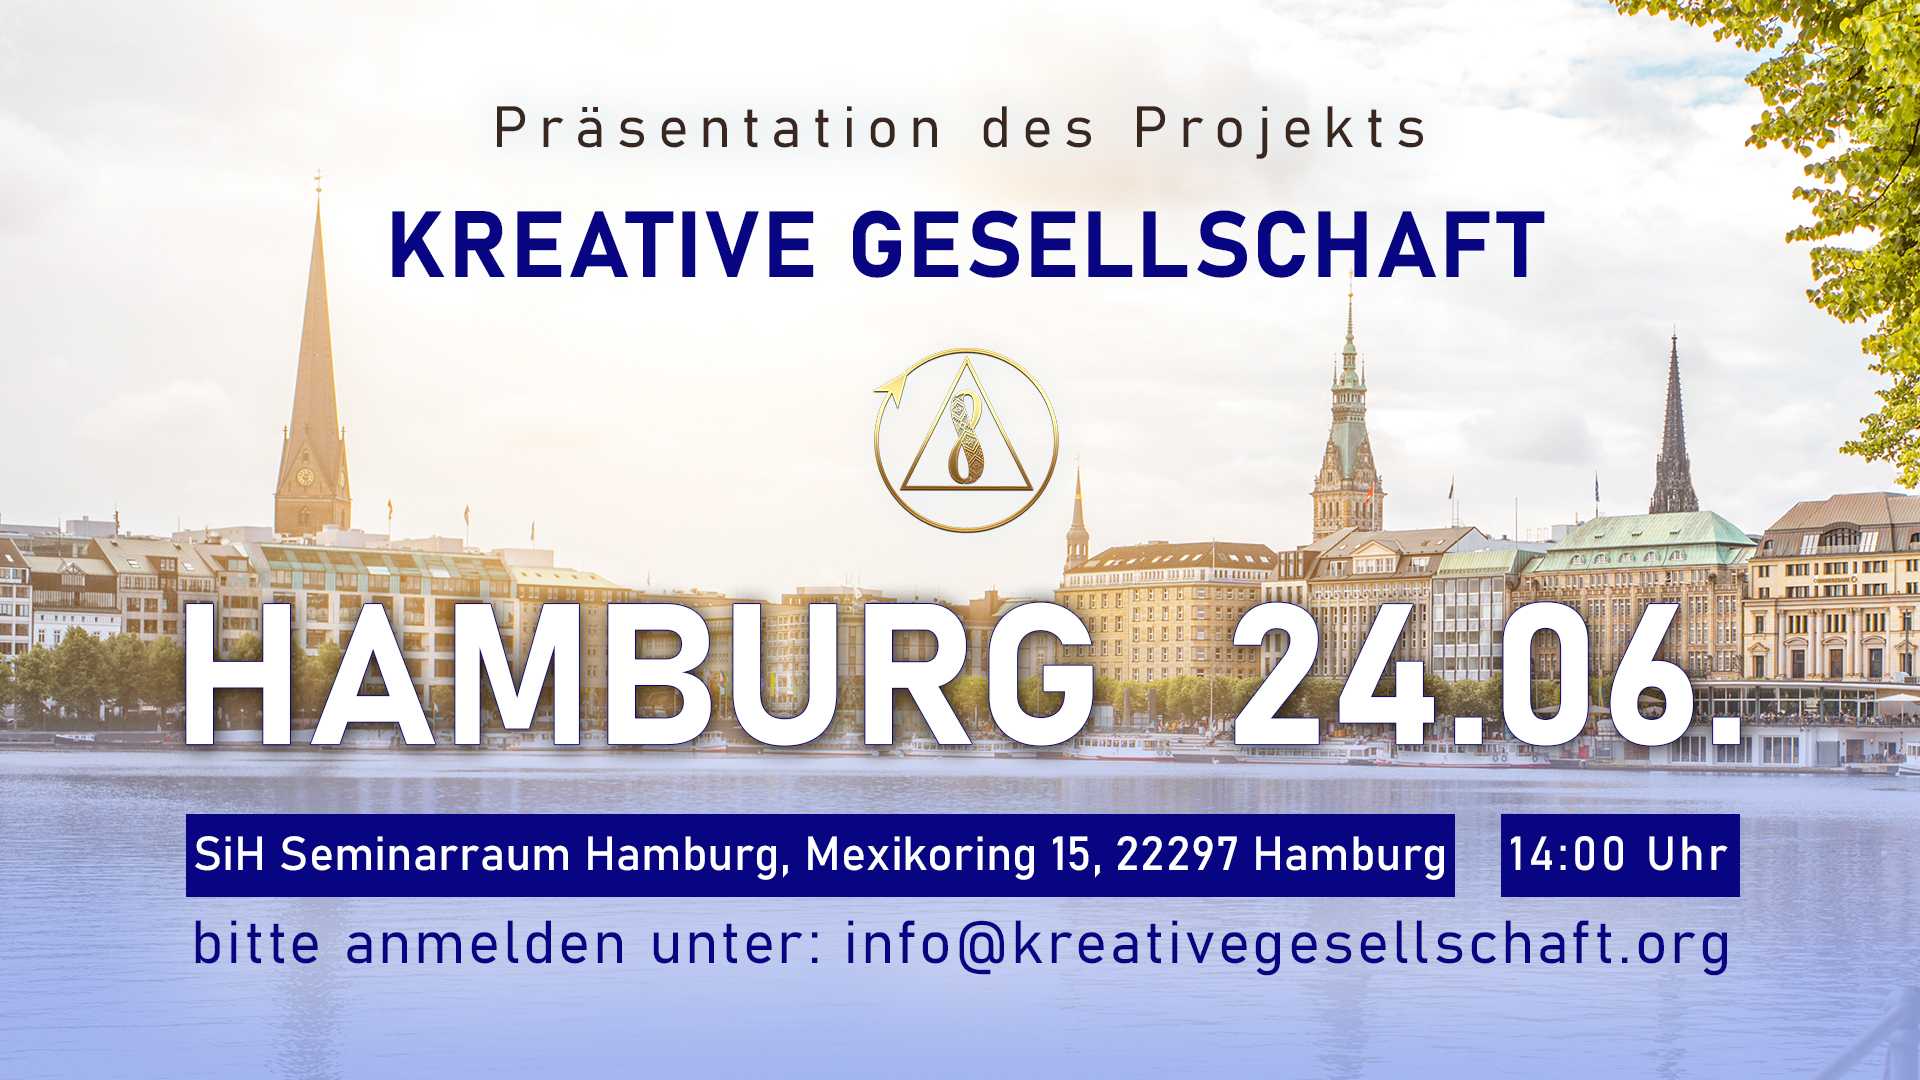 Präsentation des Projekts “Kreative Gesellschaft” in Hamburg